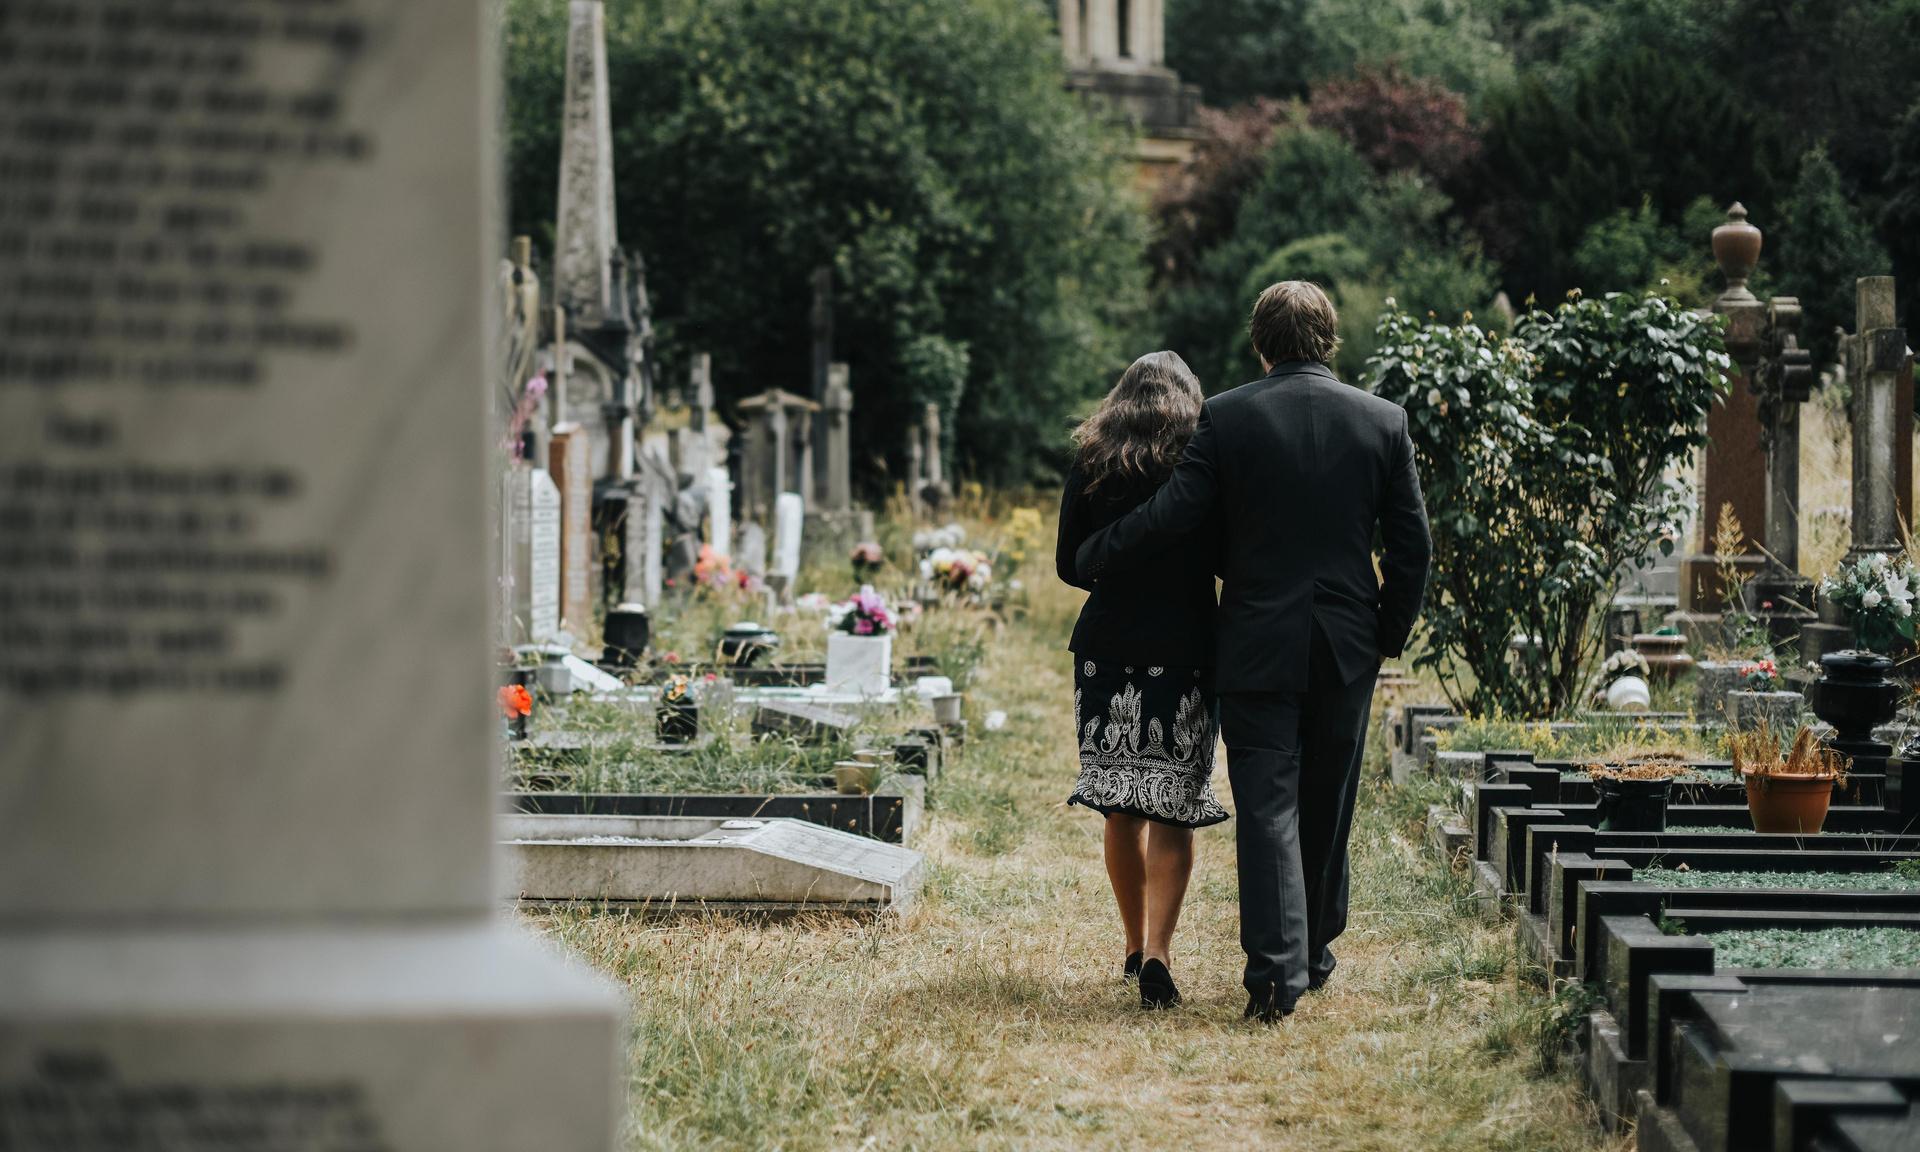 «Приходи на кладбище, позависаем»: зумеры запустили тренд на необычные места для свиданий